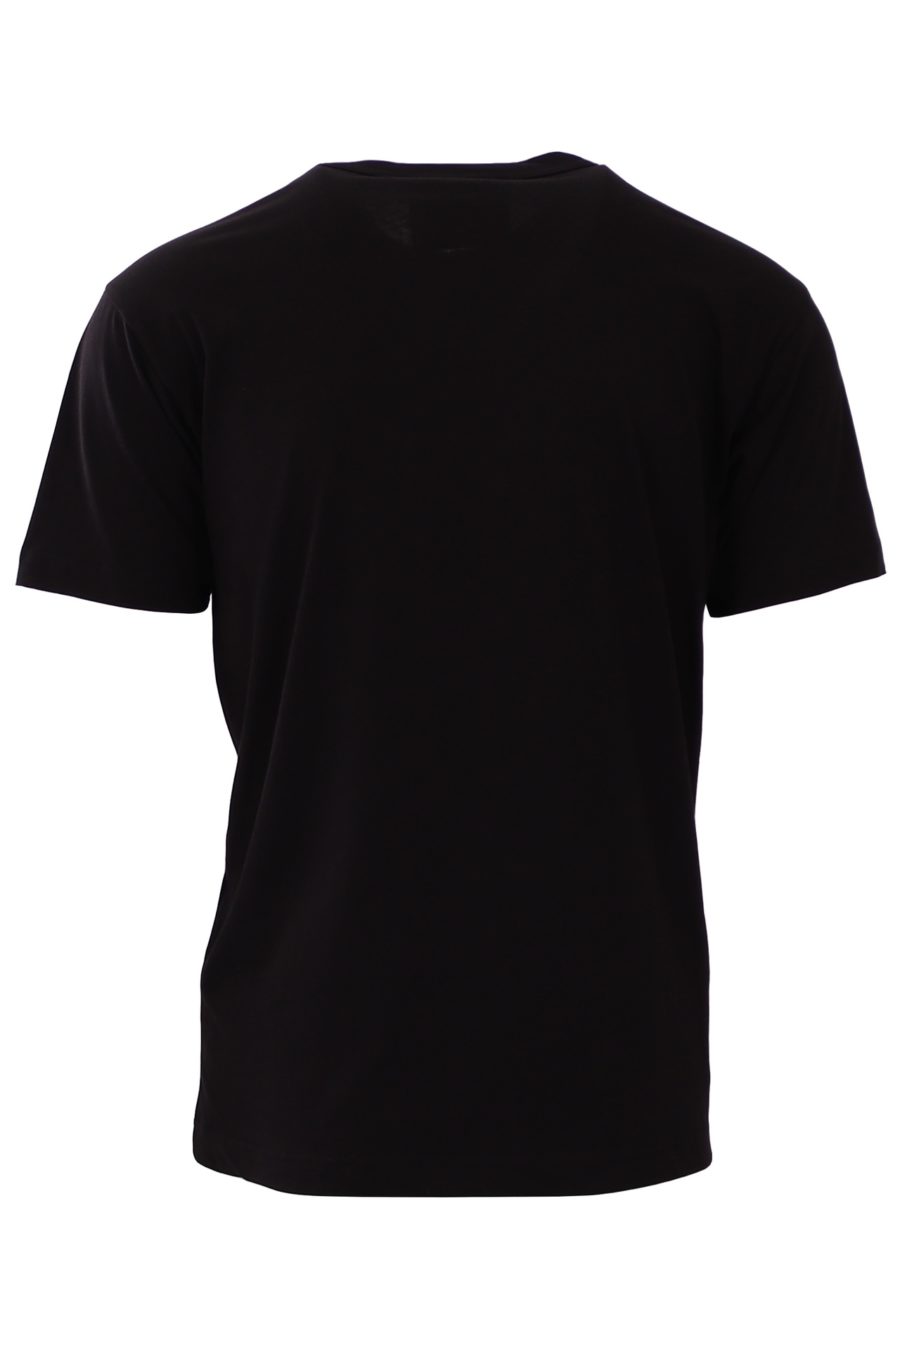 T-shirt ordinaire Versace Jeans Couture noir avec écriture dorée - 1acf16985969421acfbc6af88402f32f1bcb559e